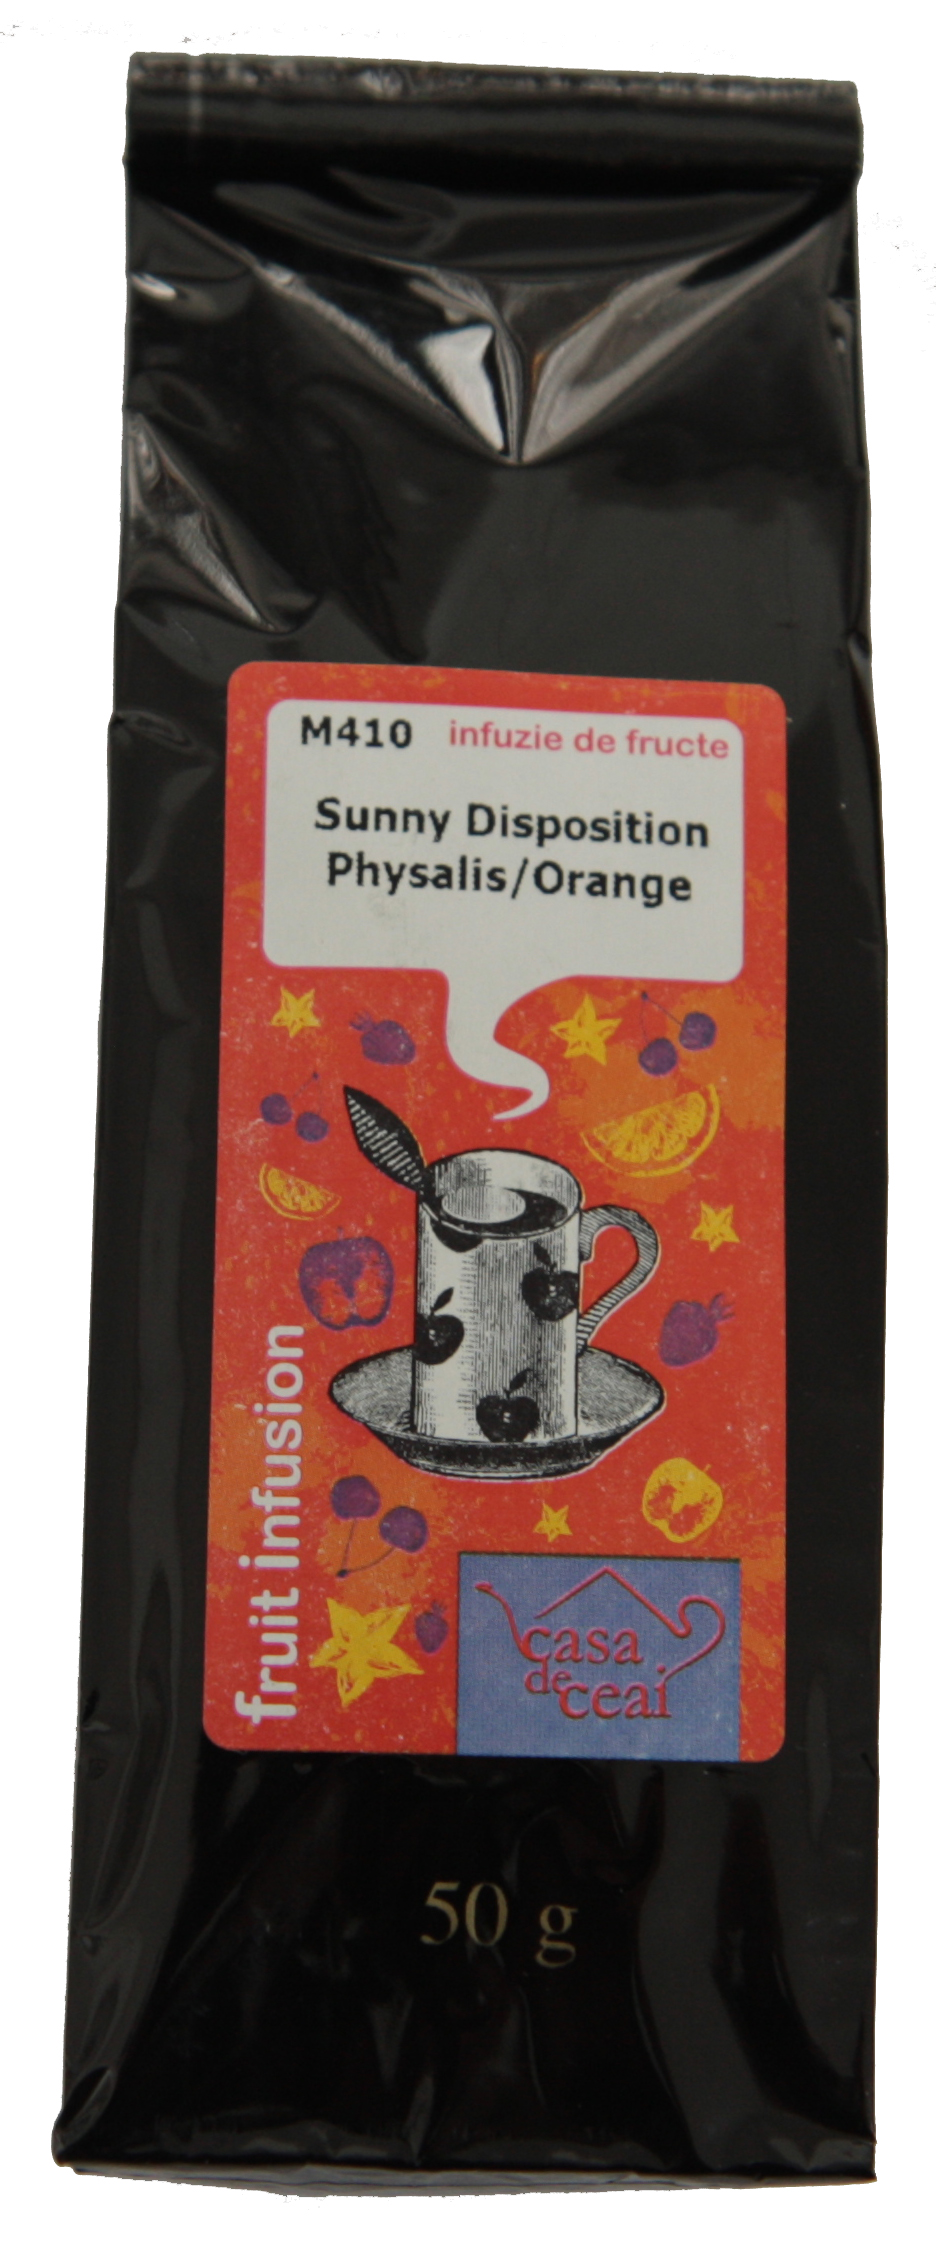 M410 Sunny Disposition Physalis / Orange | Casa de ceai